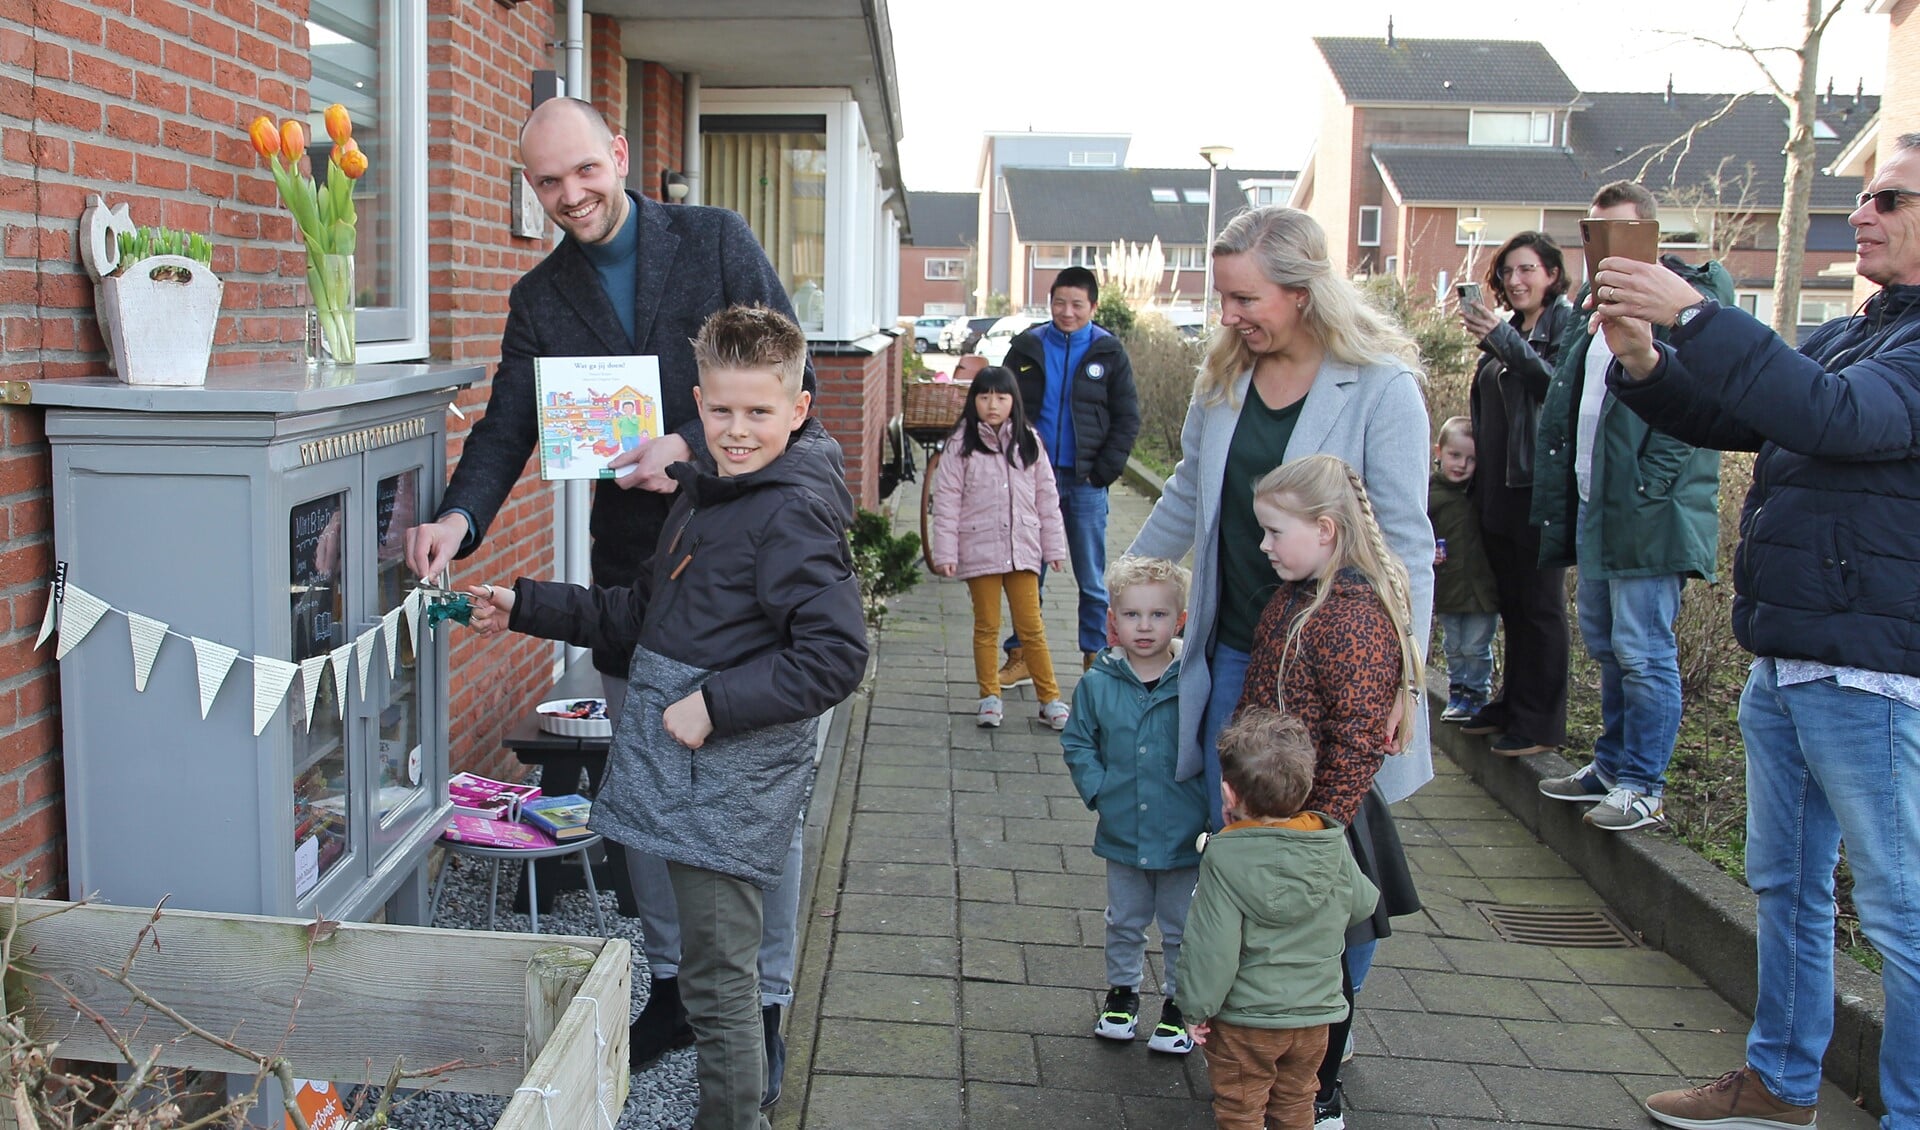 Met deskundige hulp uit de buurt opende wethouder Wouter Struijk de Minibieb Maaswijk. 